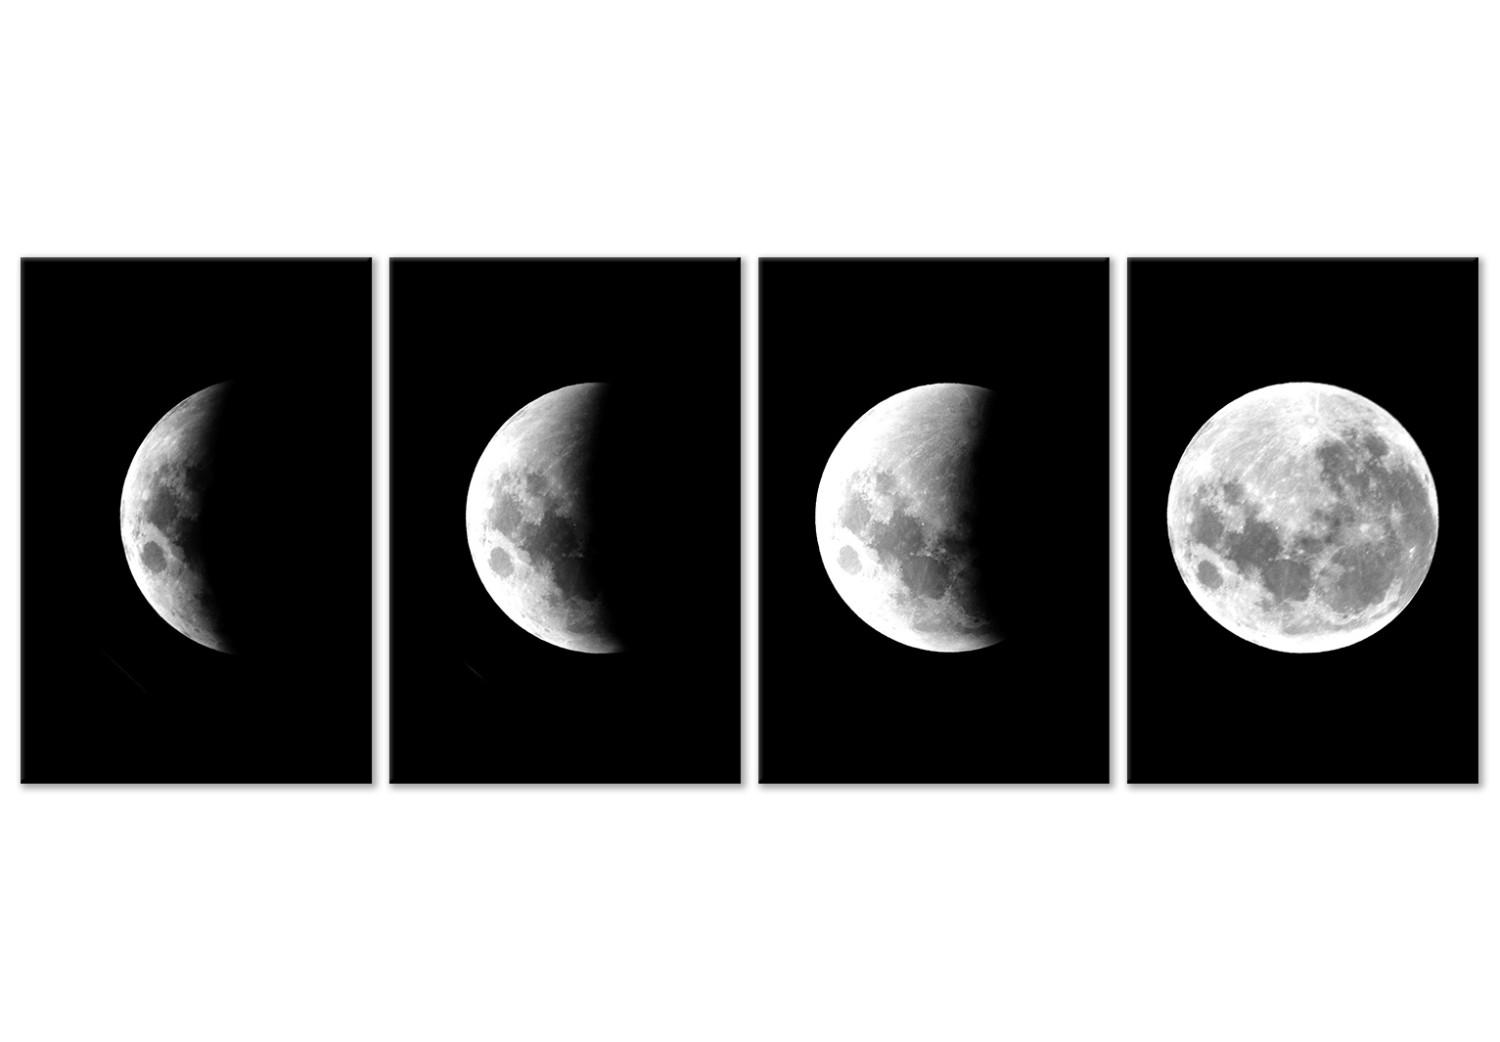 Cuadro moderno Fases lunares (4 piezas) - paisaje de una luna blanca en el espacio